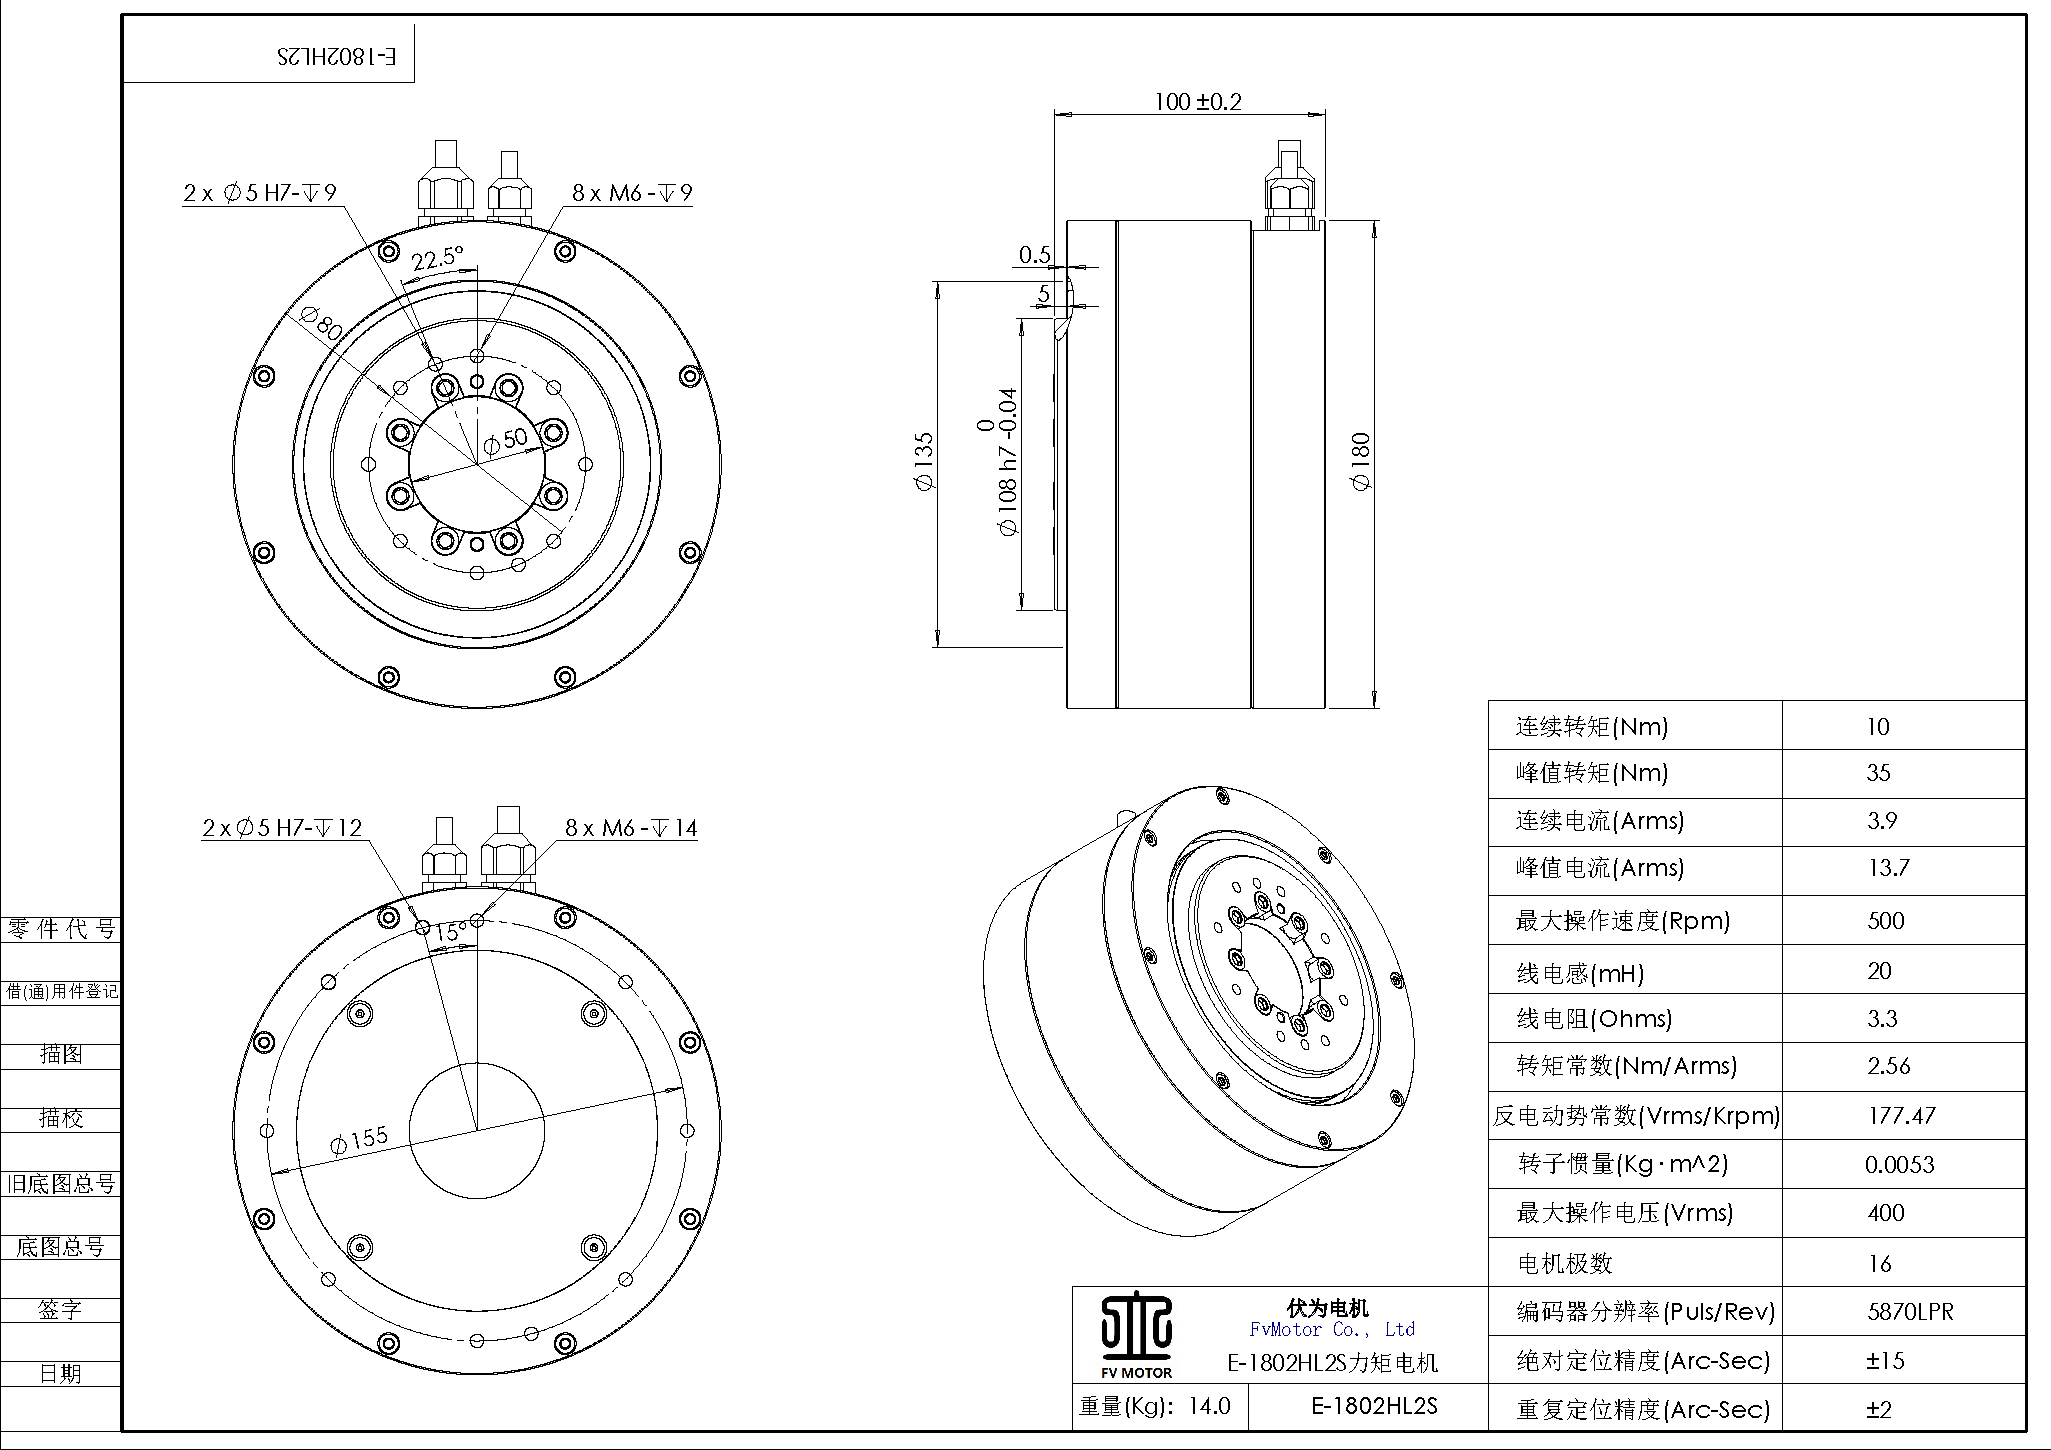 FV.E-1802HL2S电机工程图.png